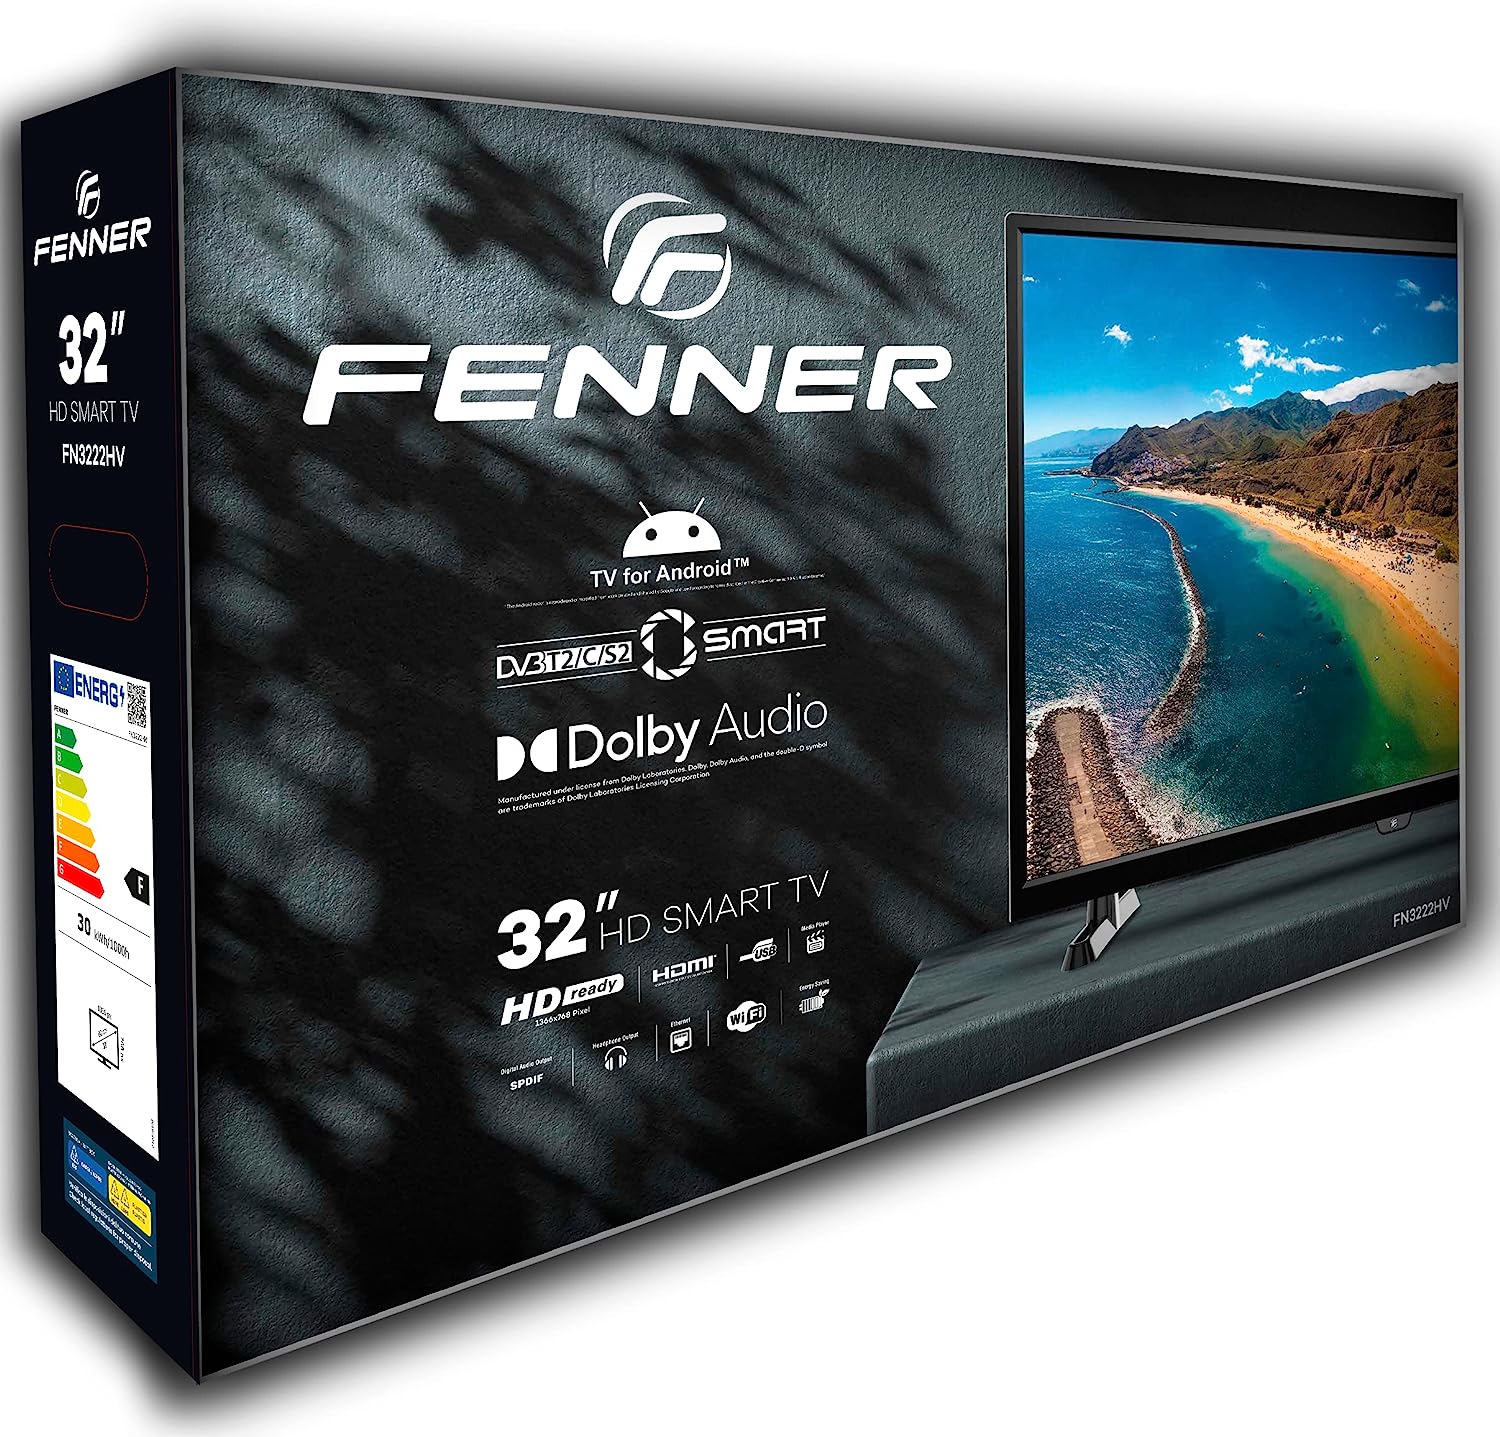 Fenner TV Led 32" HD Ready FN32A22HD Smart TV WiFi